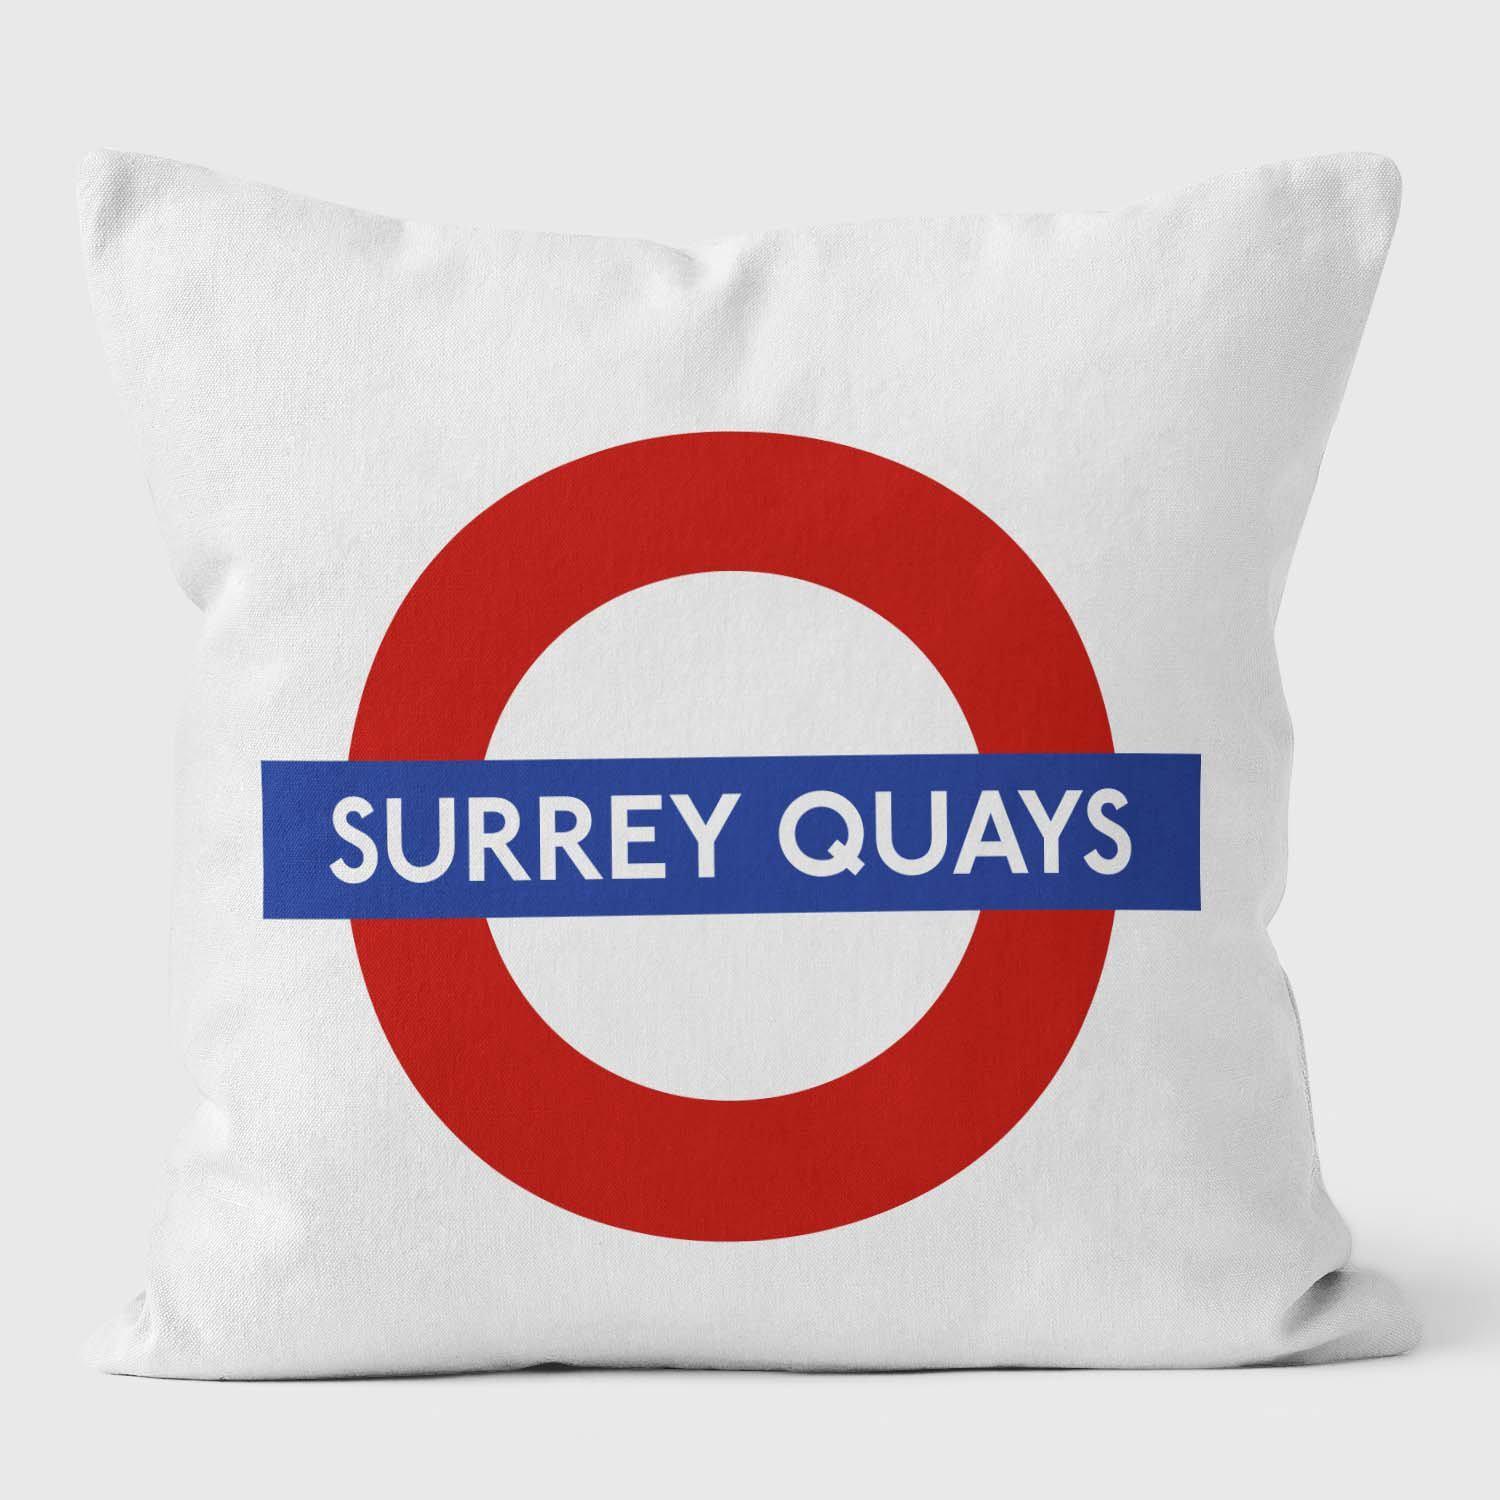 Surrey Quays London Underground Tube Station Roundel Cushion - Handmade Cushions UK - WeLoveCushions